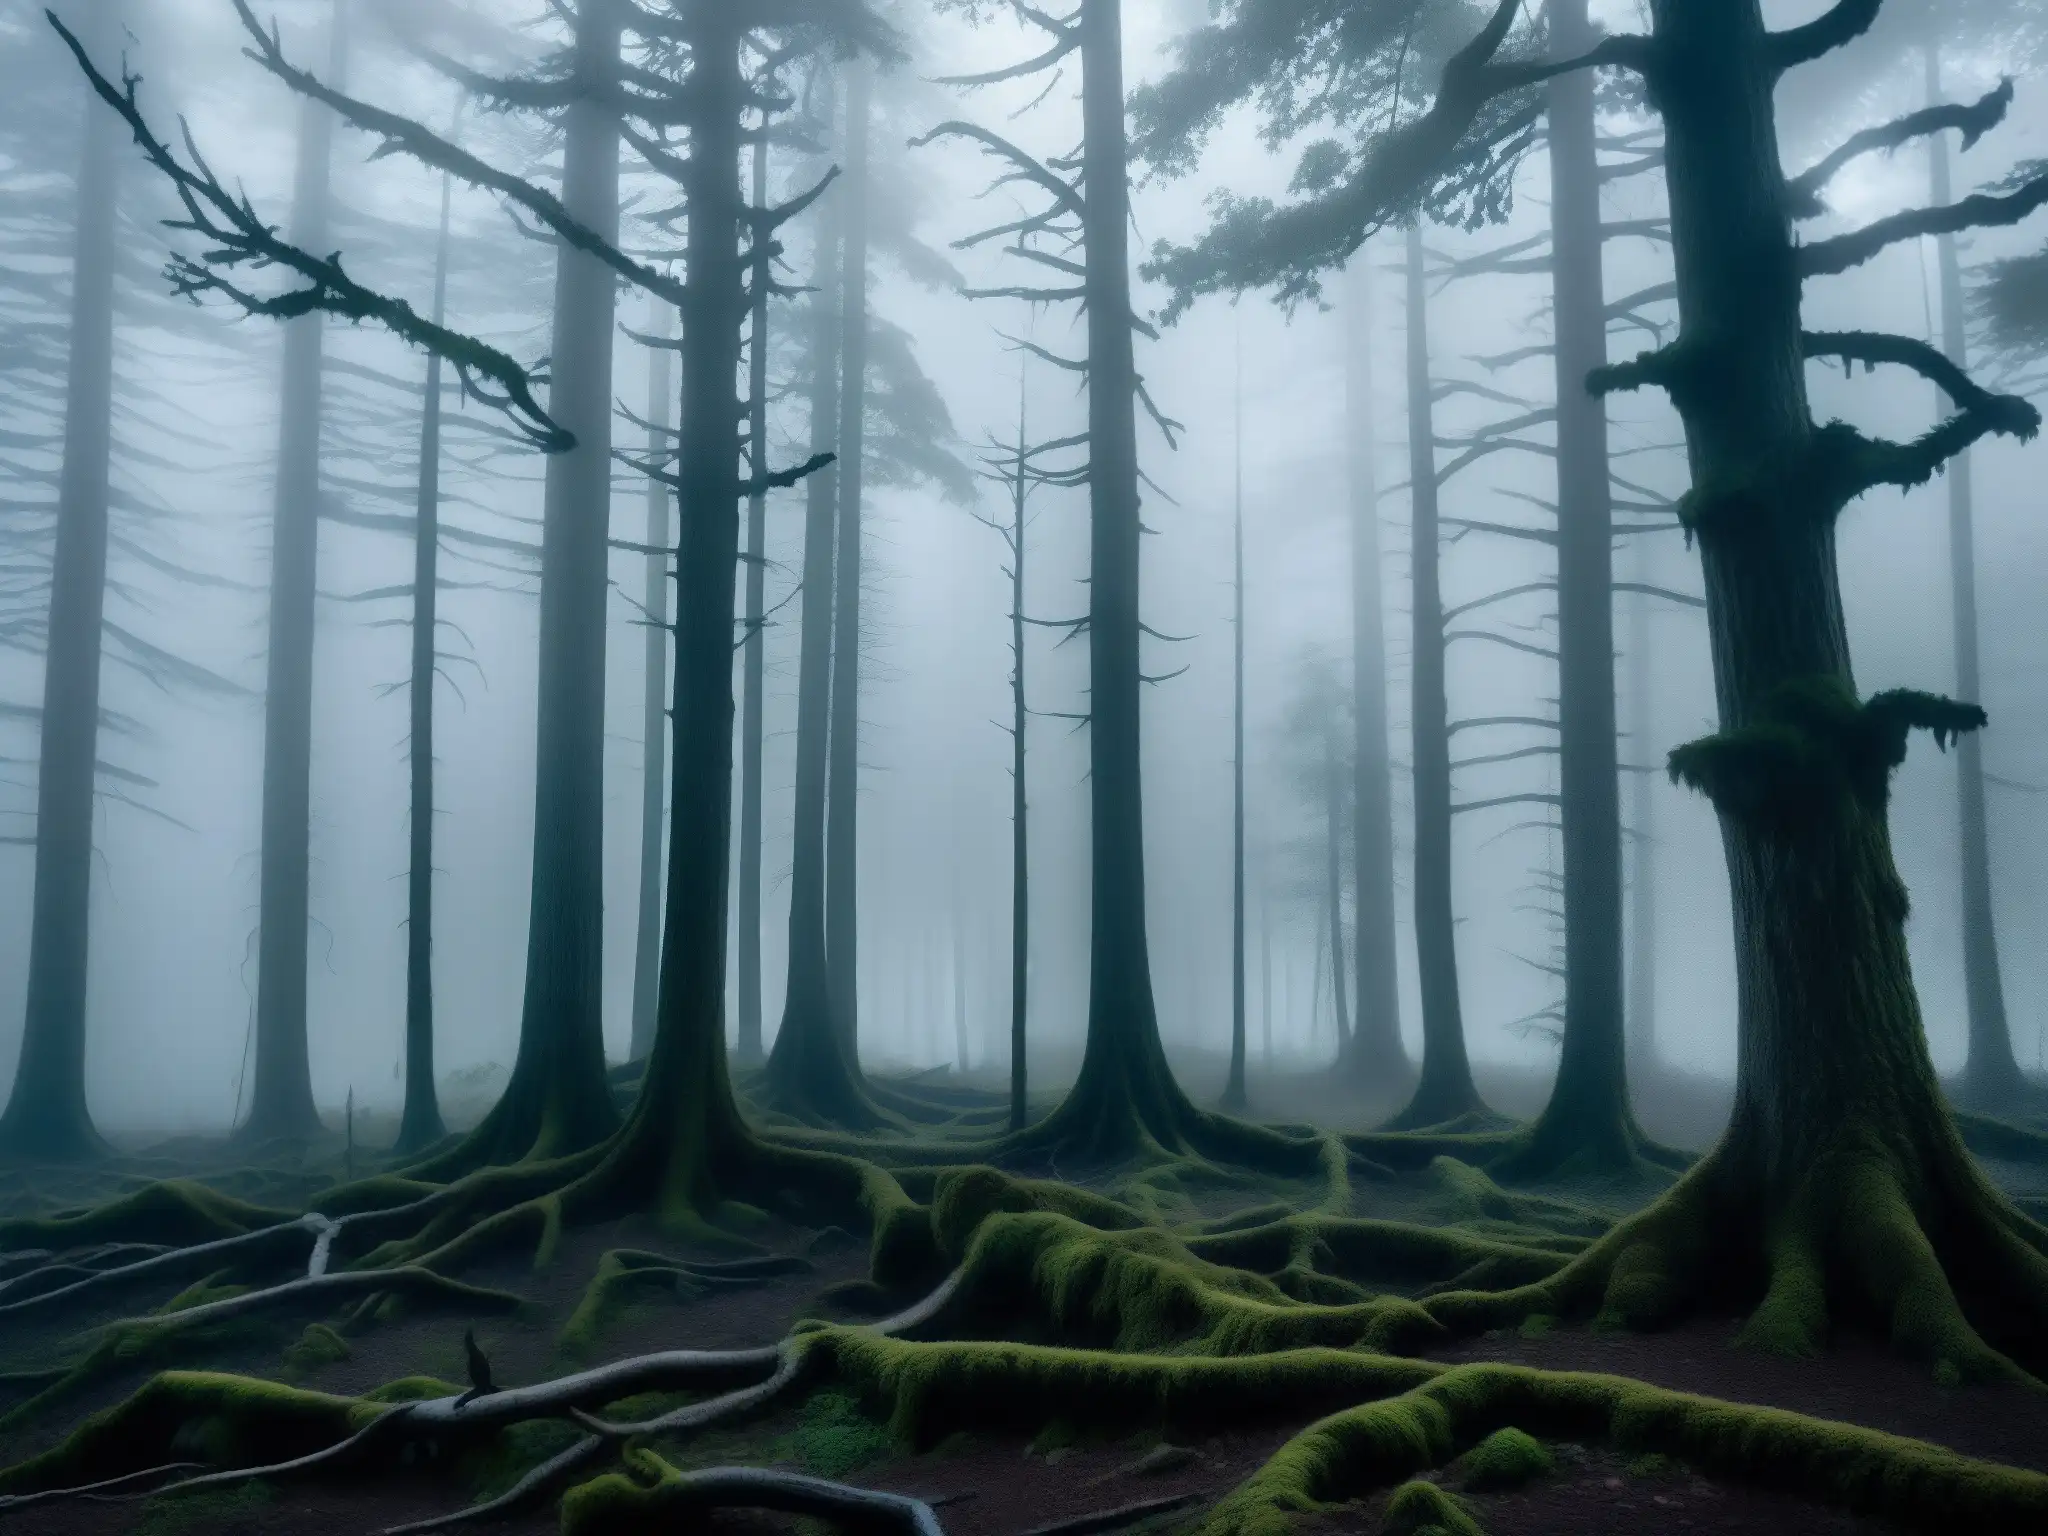 Un bosque densamente neblinoso al anochecer, con árboles retorcidos y maleza enredada, crea una atmósfera misteriosa